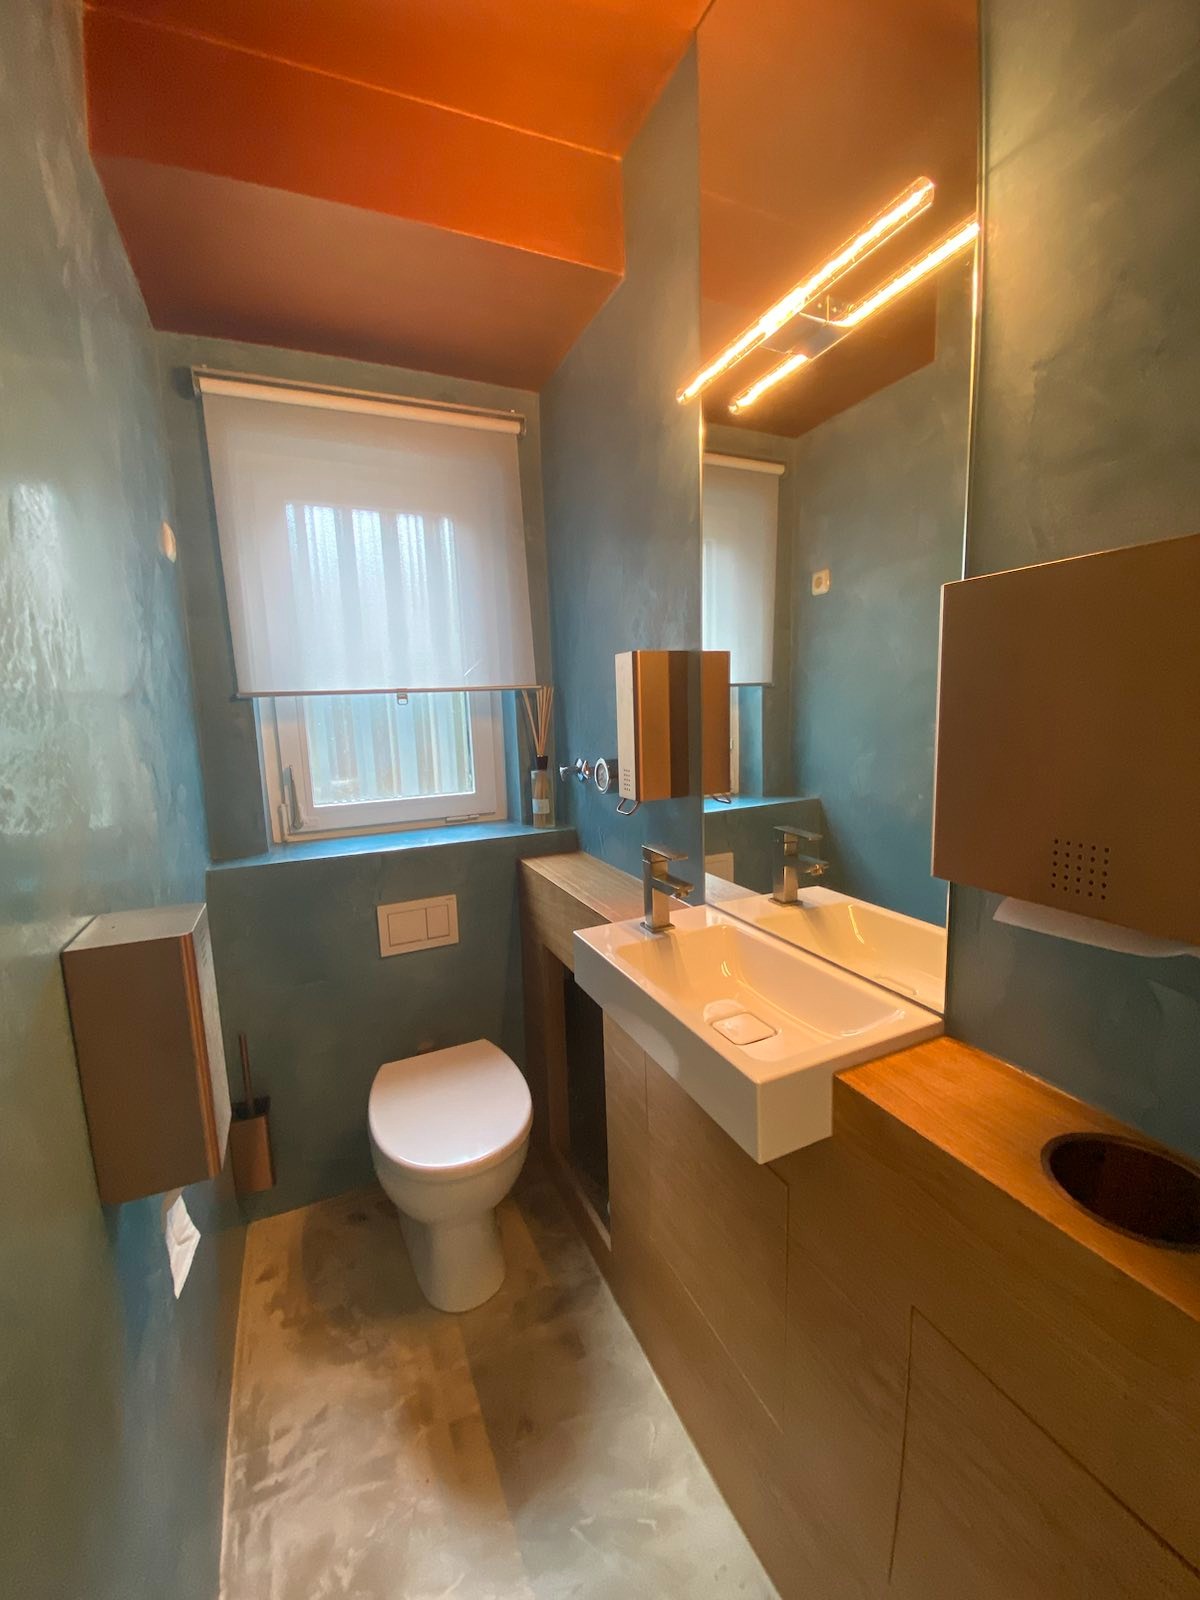 Kalkmarmor an Wänden in einem WC, Alles aus einer Hand vom Entwurf bis zur Umsetzung